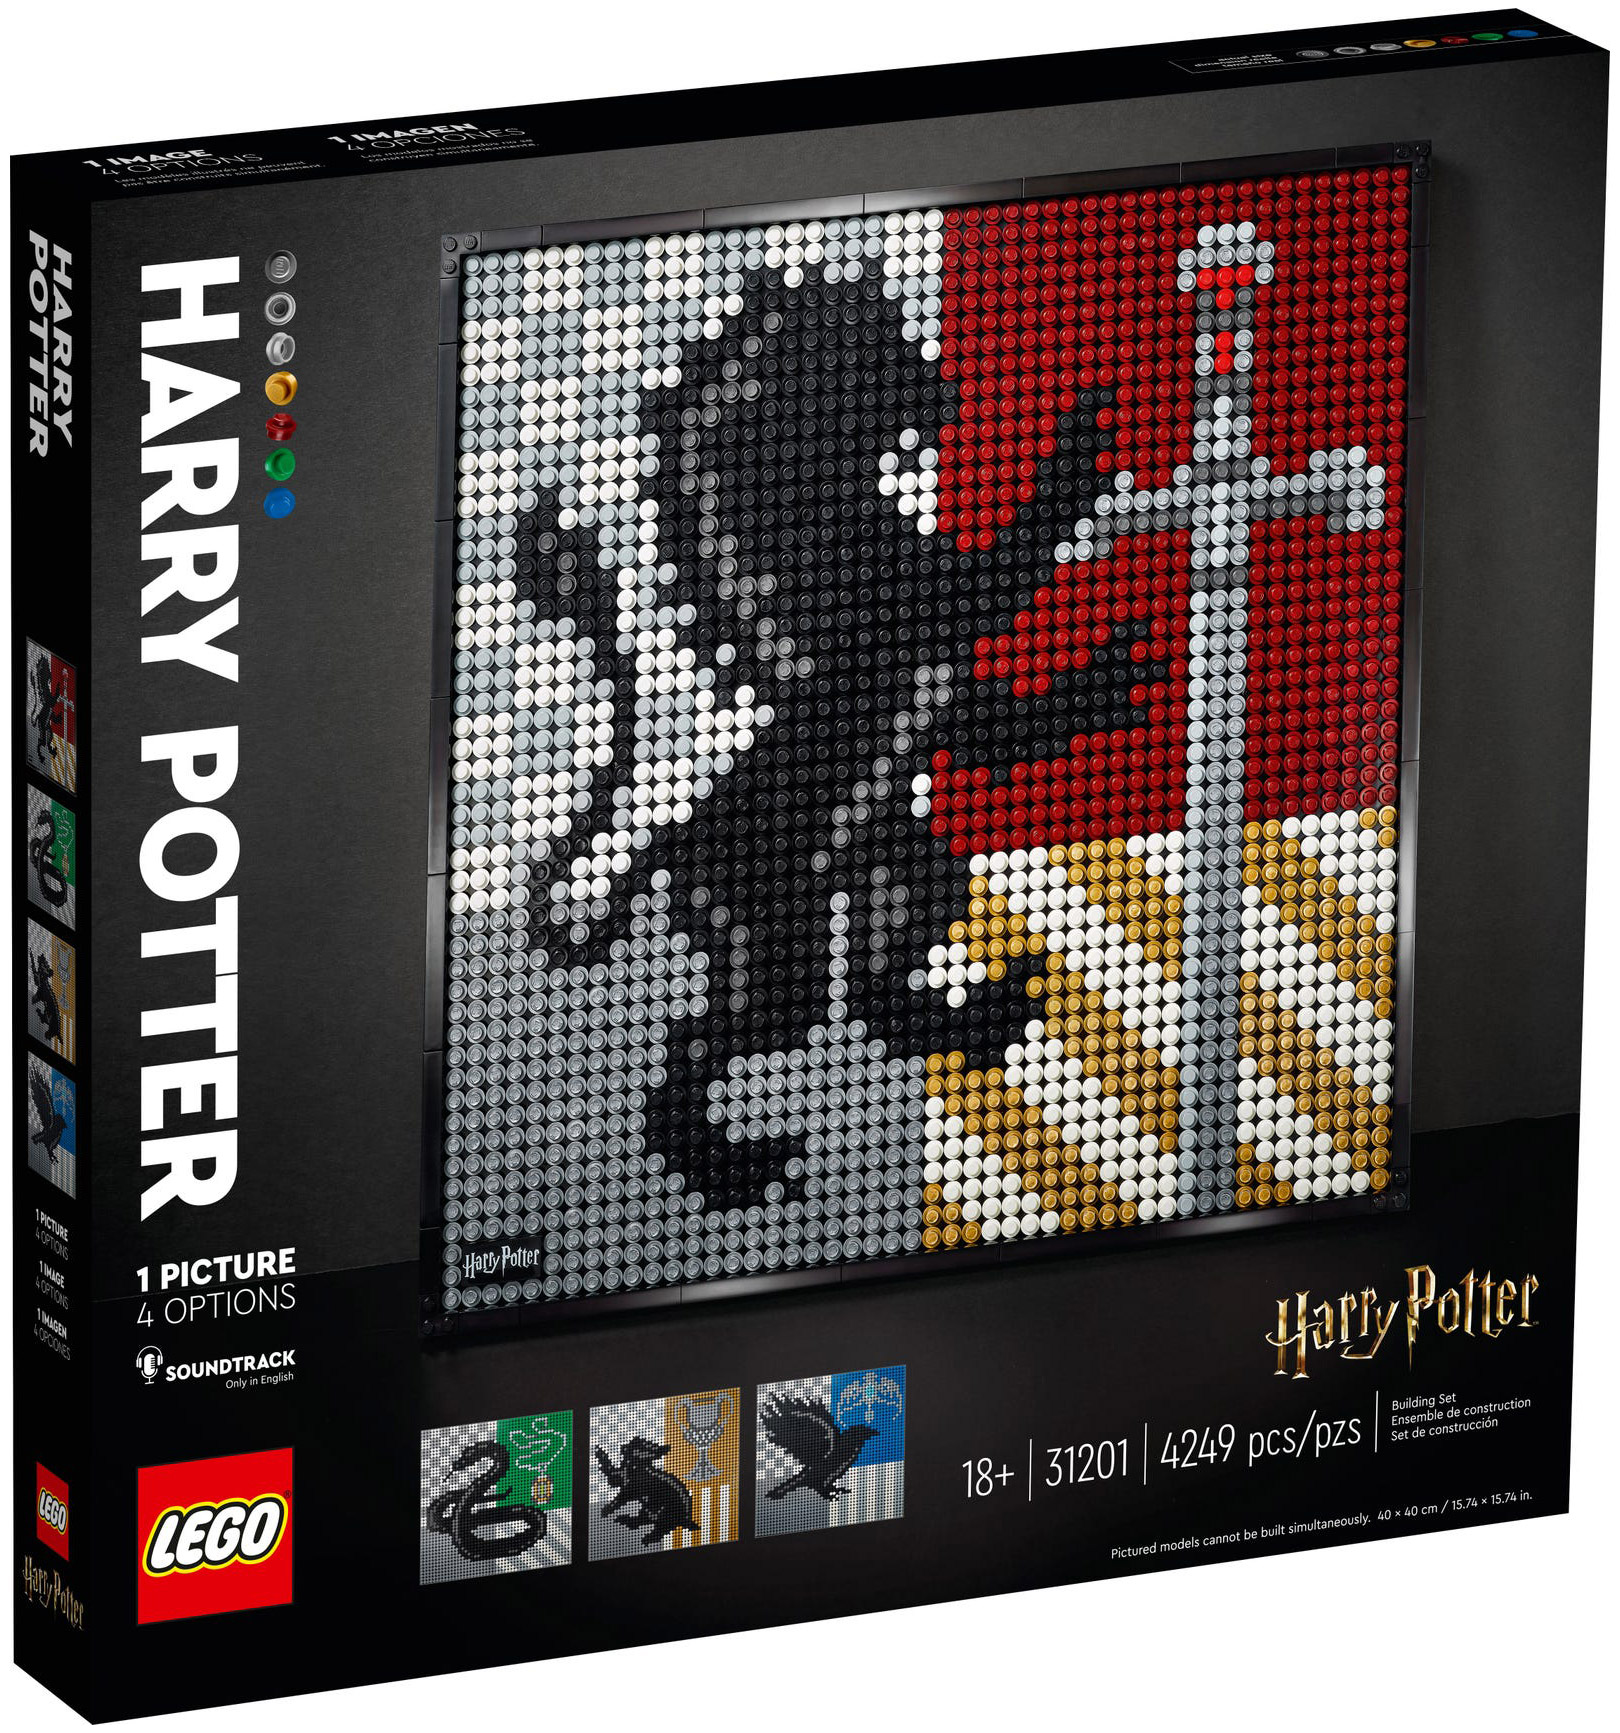 LEGO Art 31201 pas cher, Harry Potter Les blasons de Poudlard